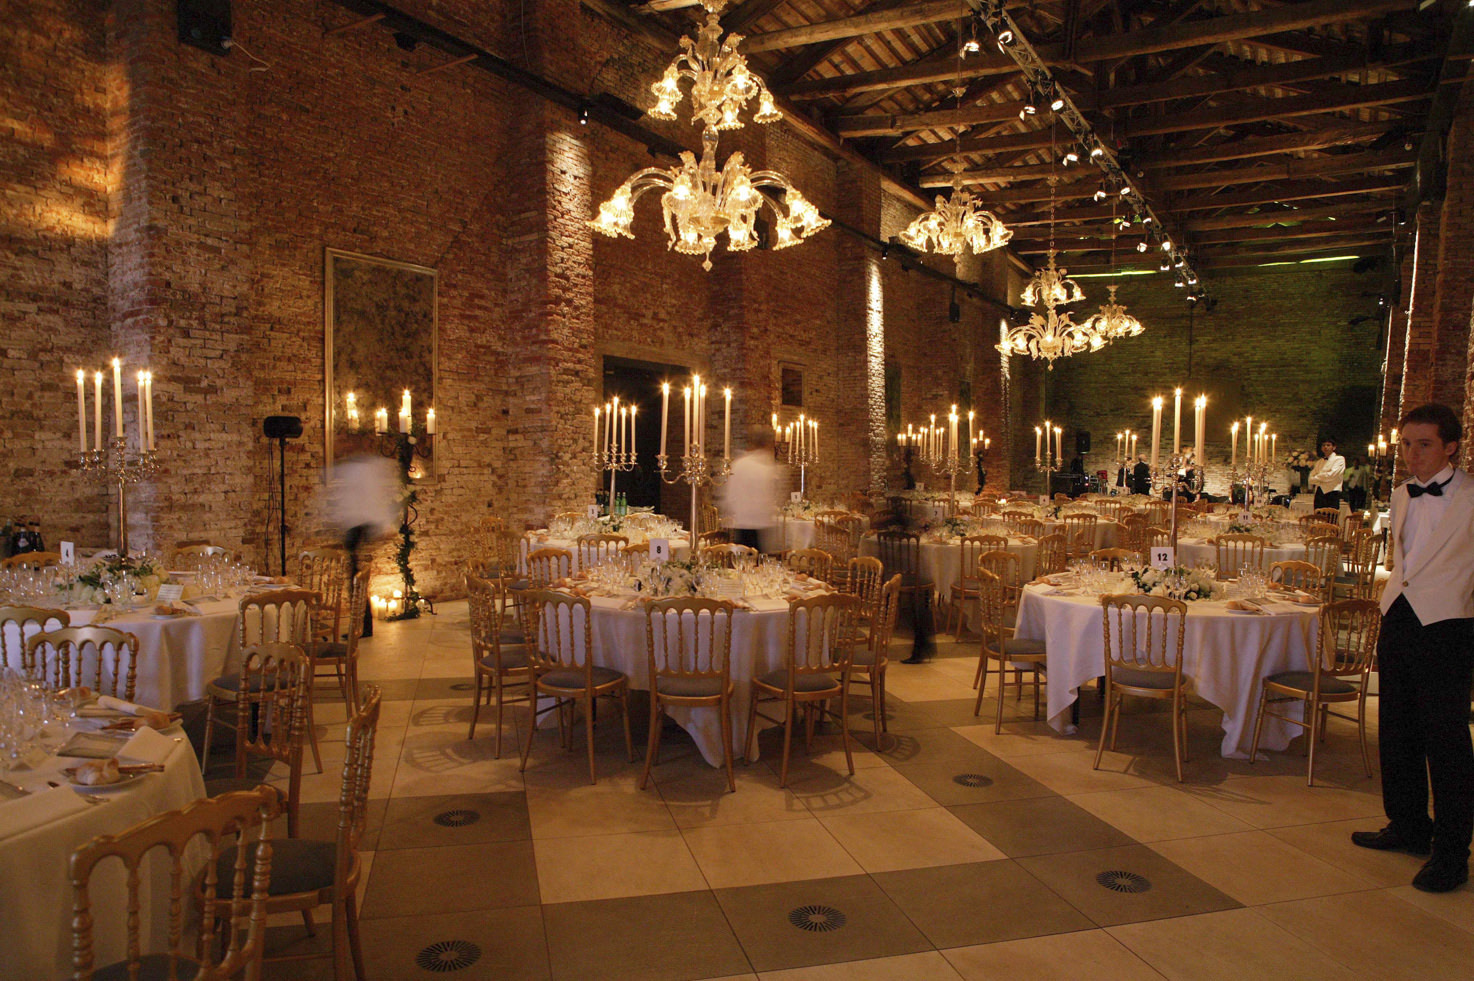 Wedding banquet at Hotel Cipriani